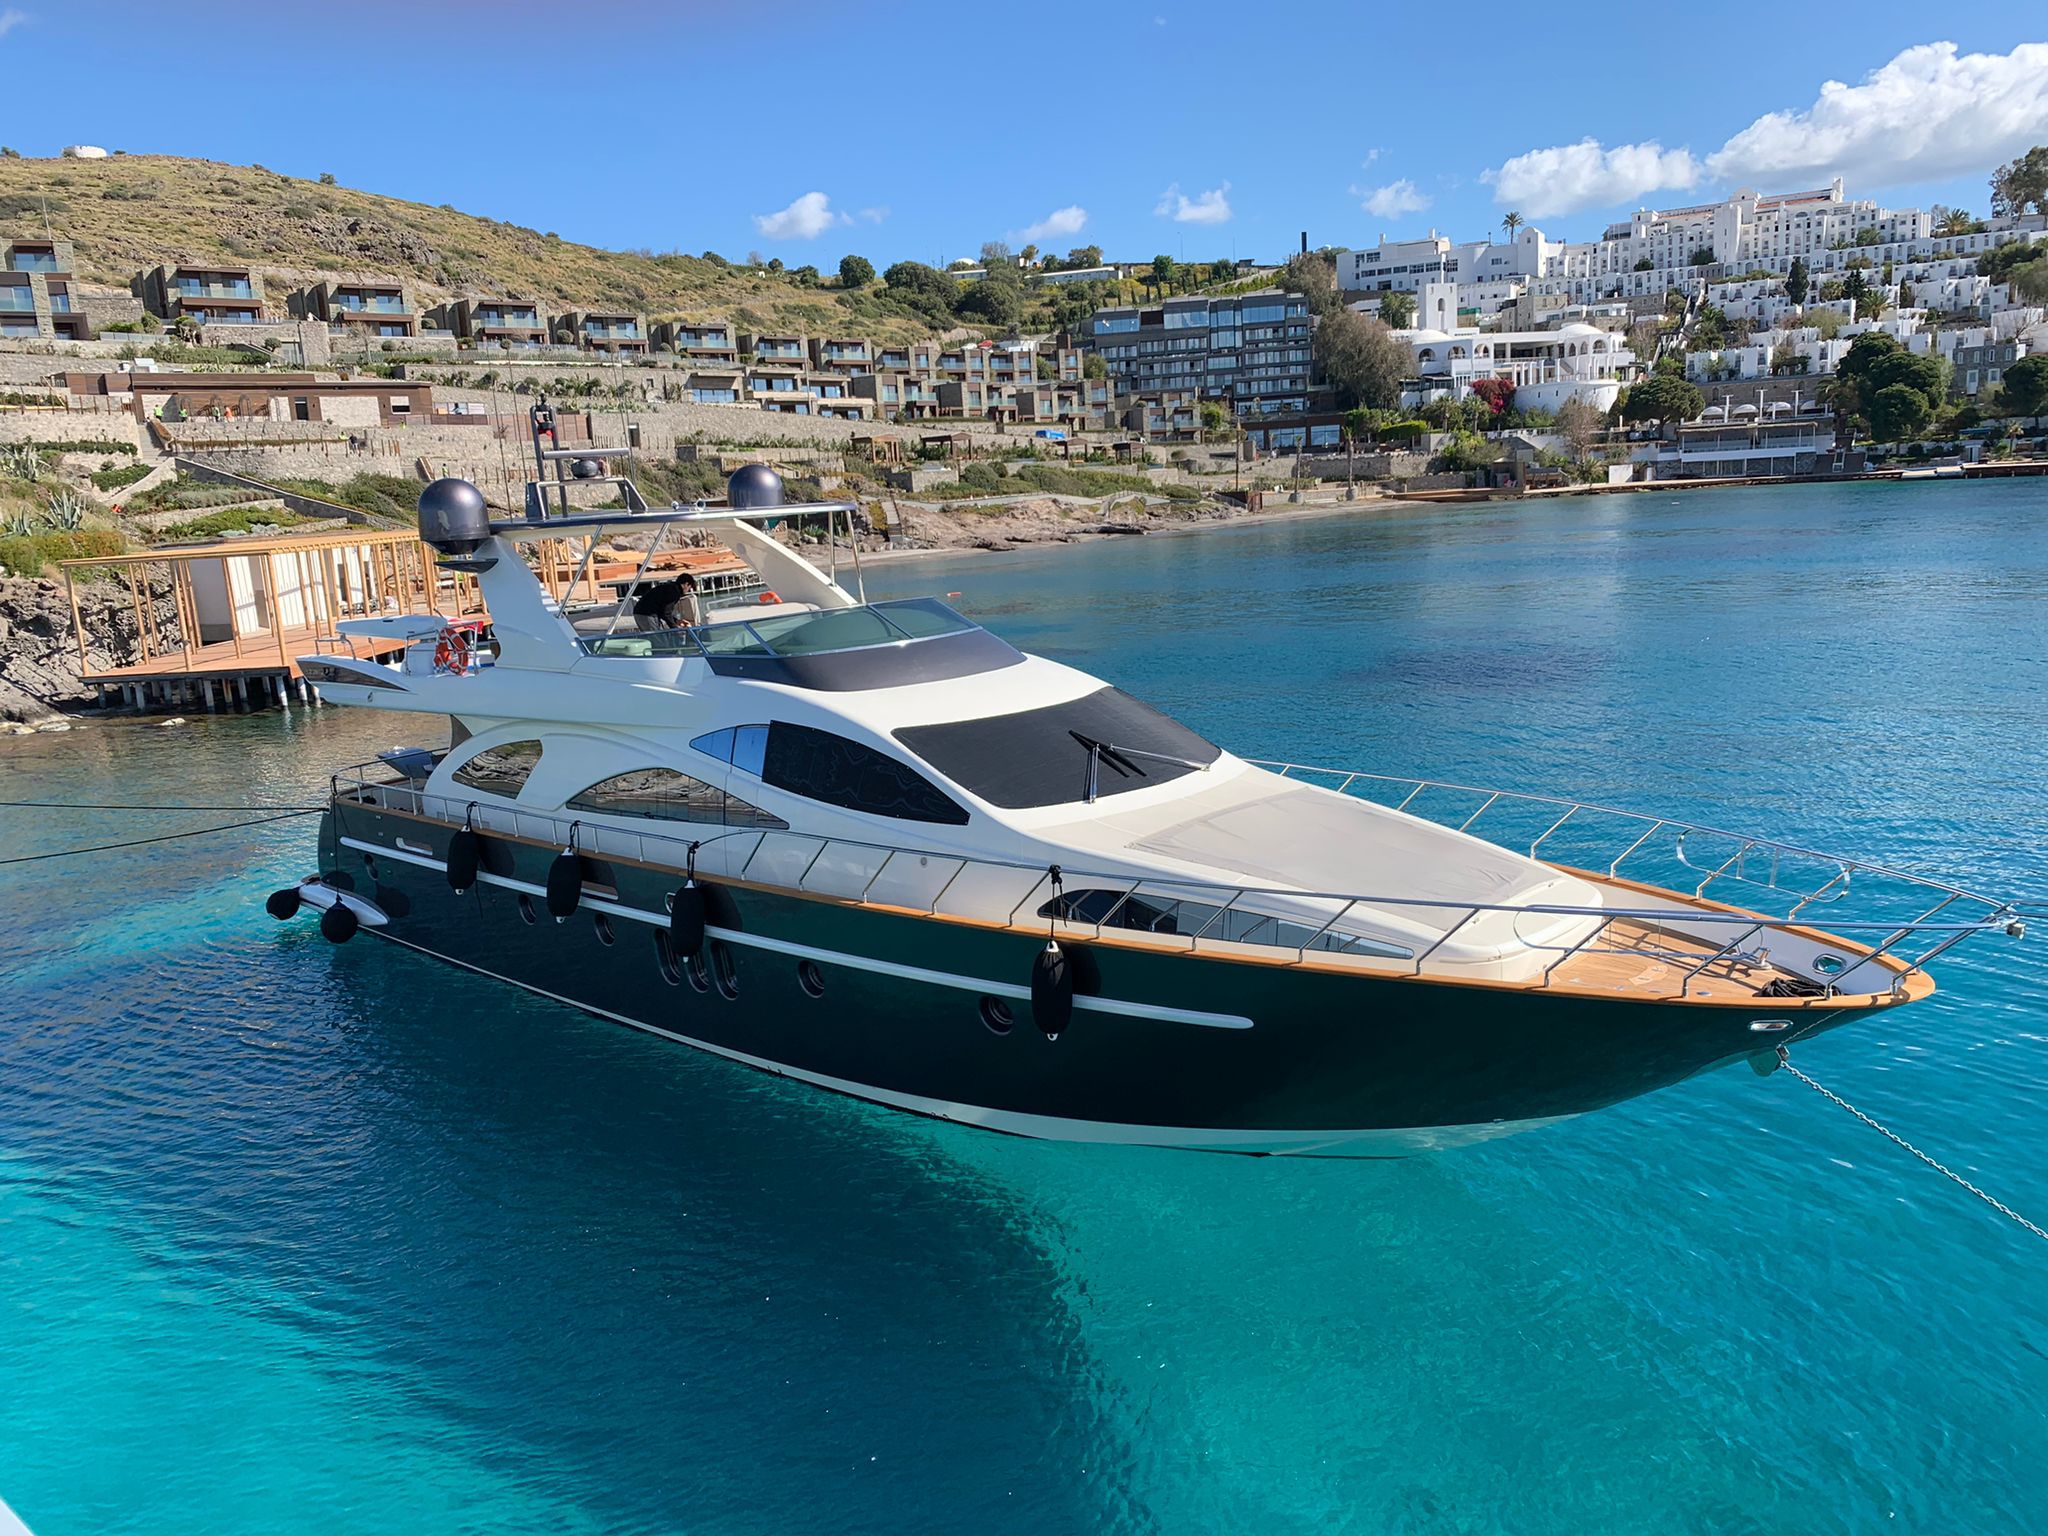 Azimut 80 - Superyacht charter worldwide & Boat hire in Greece Cyclades Islands Mykonos Mykonos 2